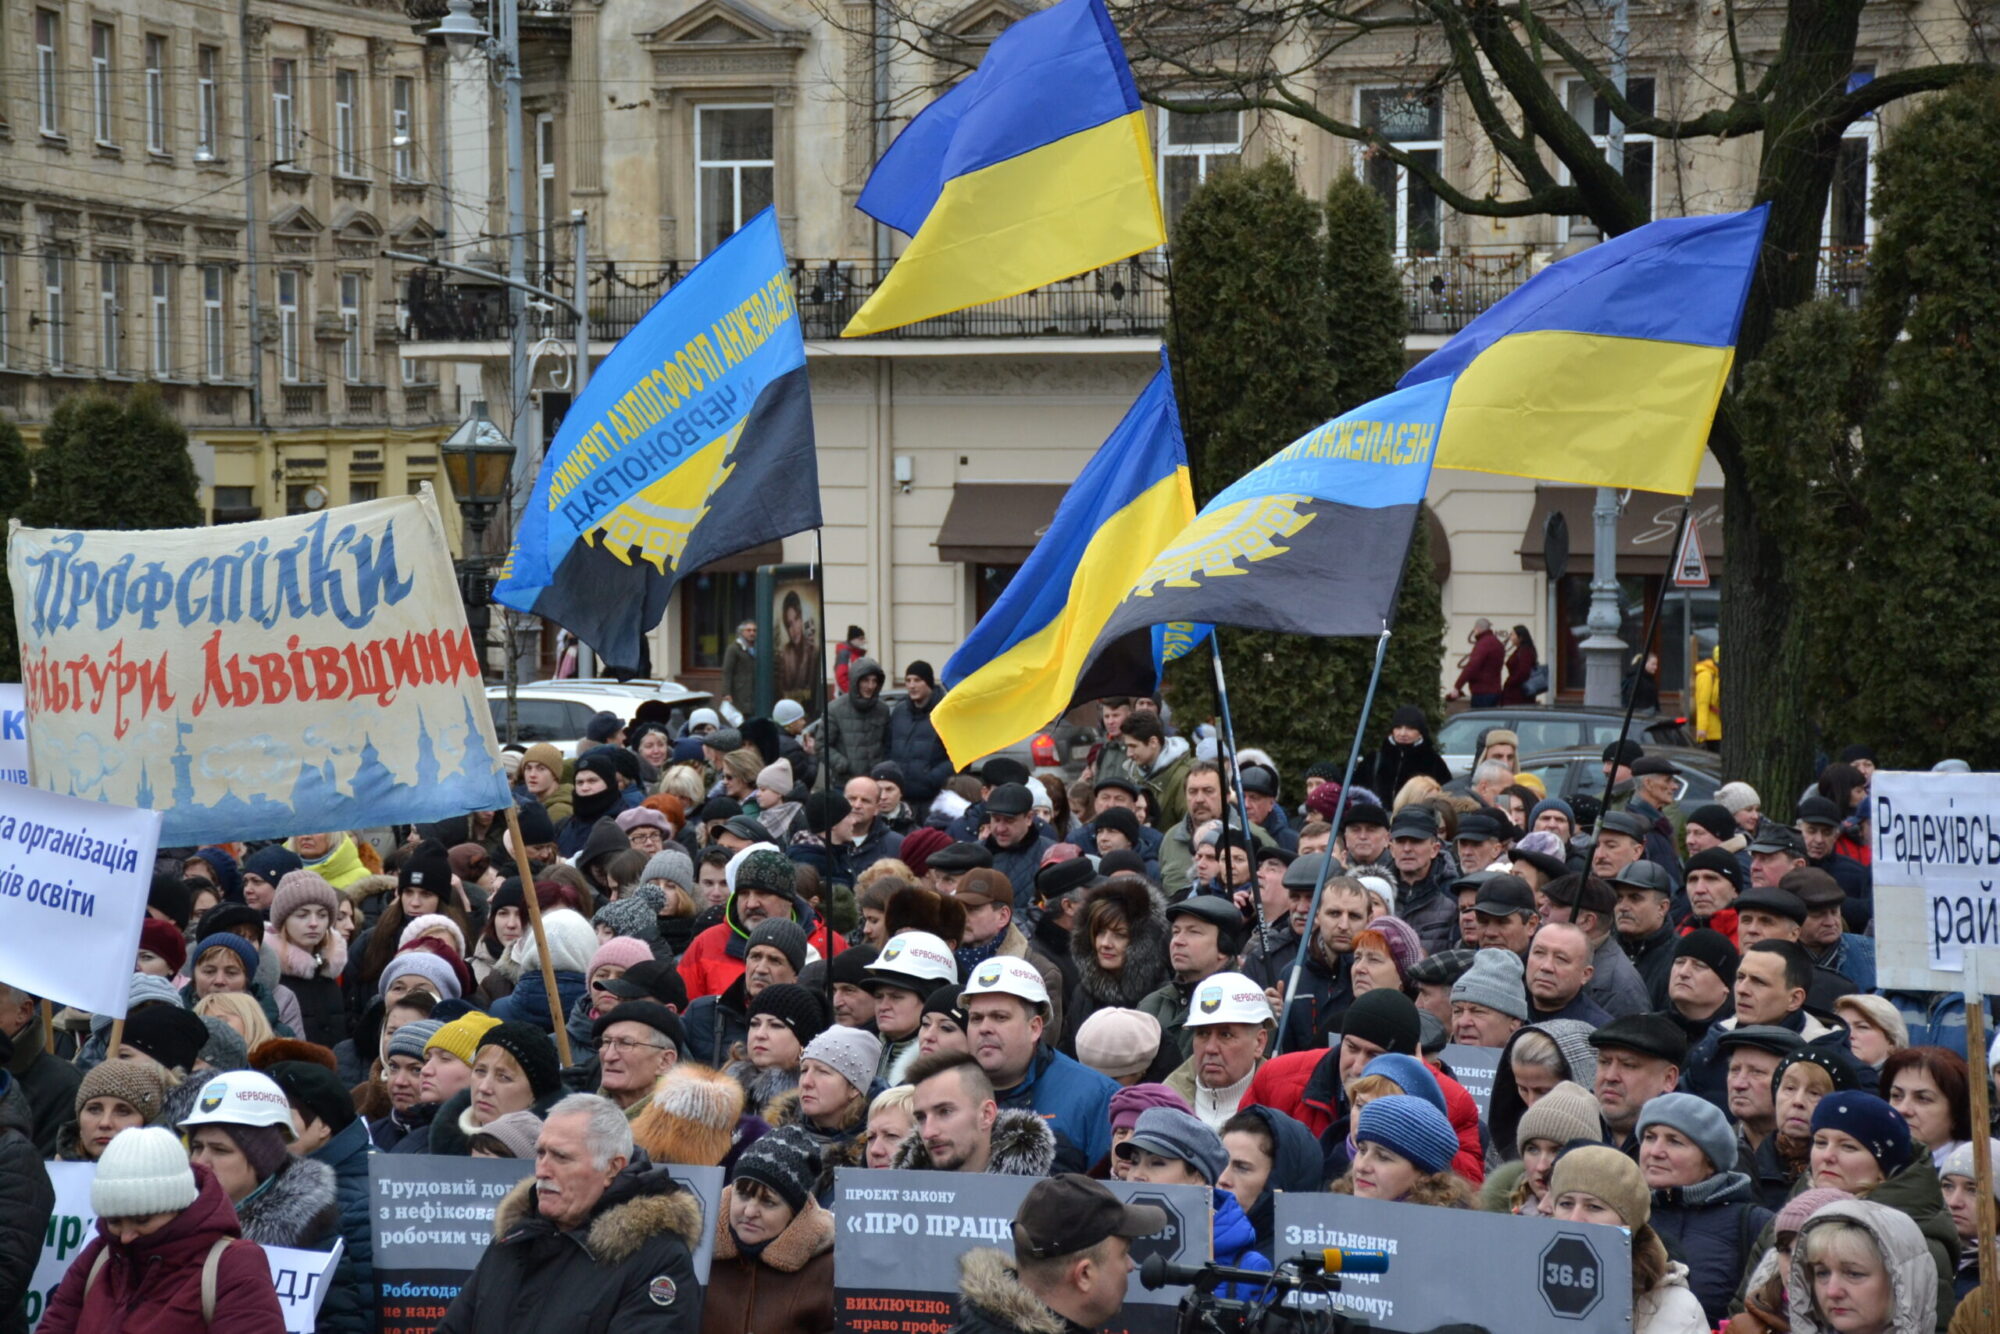 UKRAINE: ESSENTIAL INFRASTRUCTURE WORKERS ENDANGERED